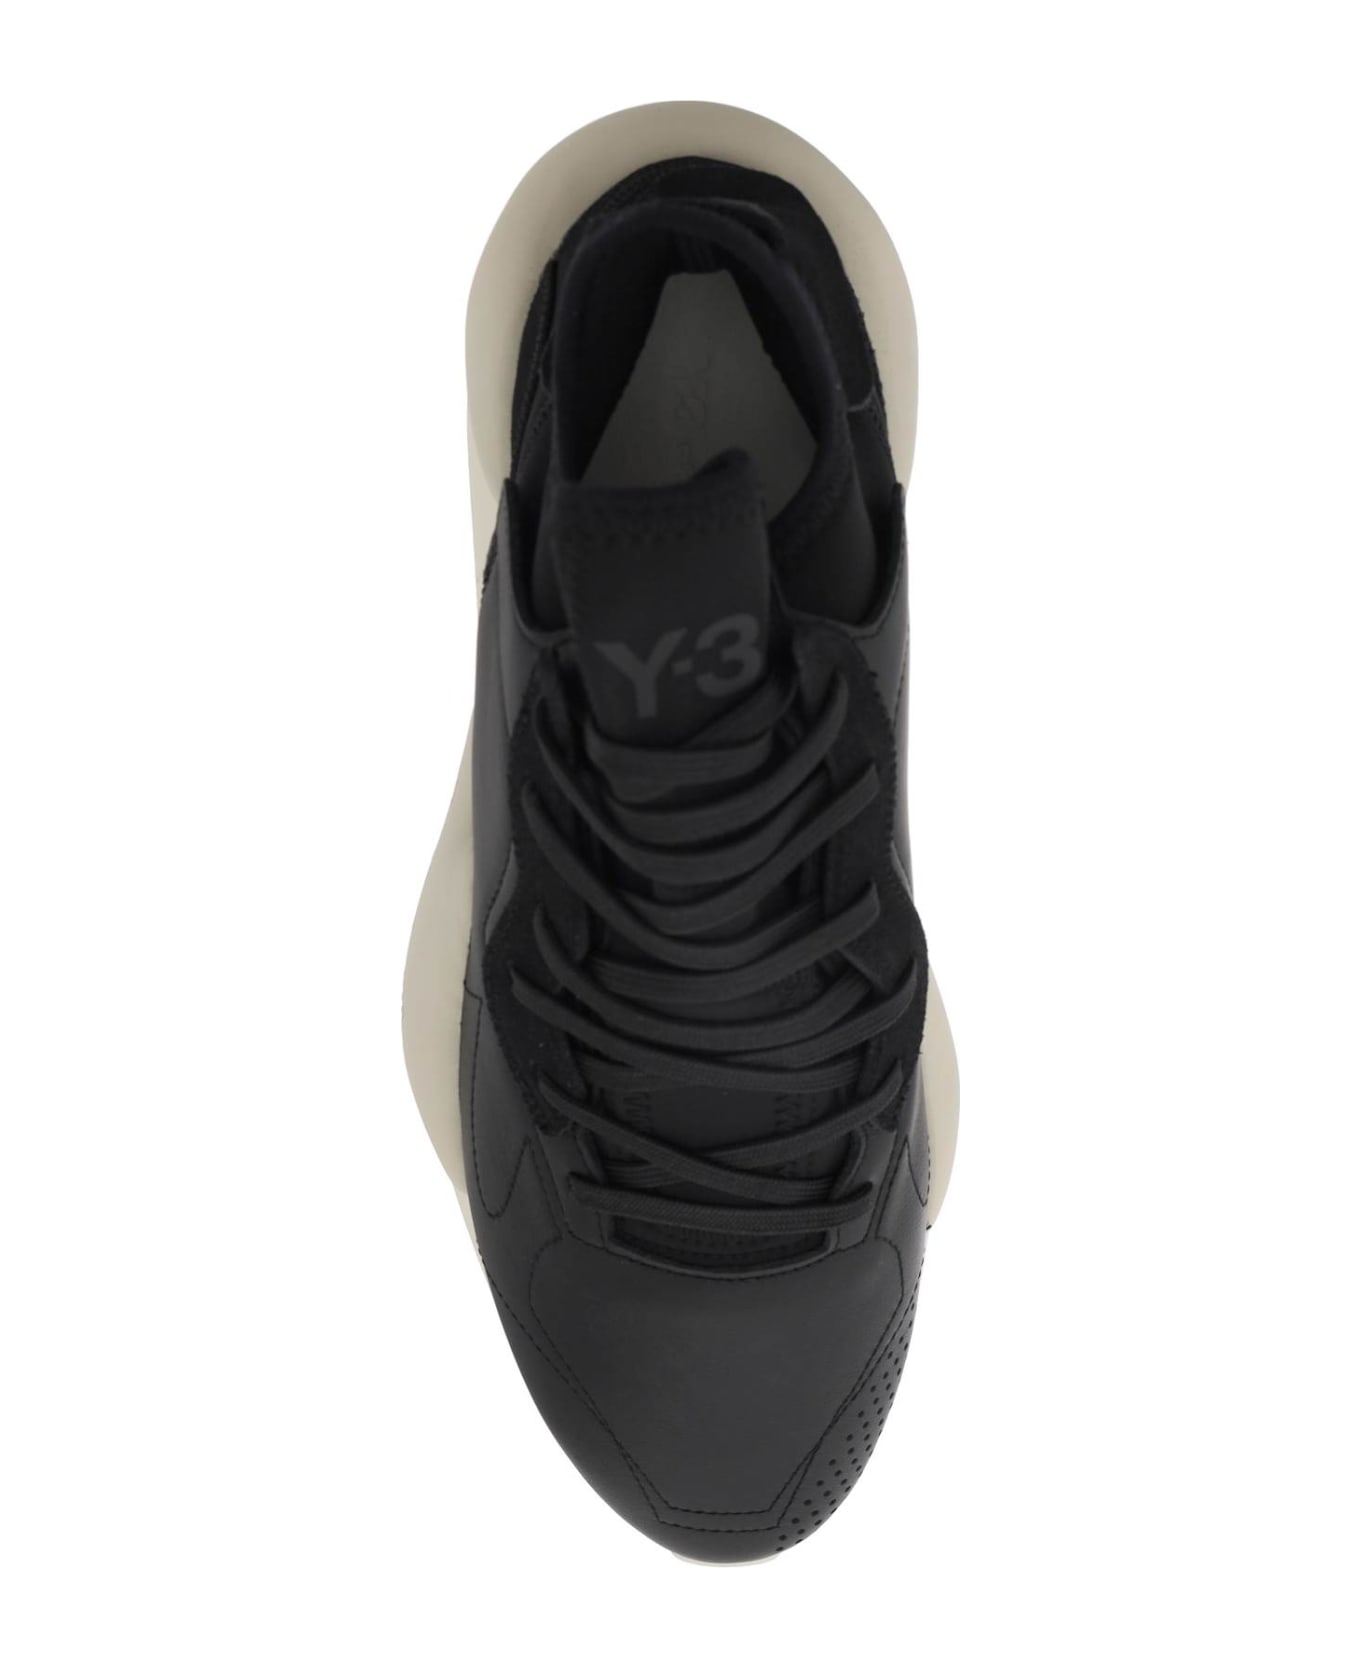 Y-3 Kaiwa Sneakers - Black/owhite/cbro